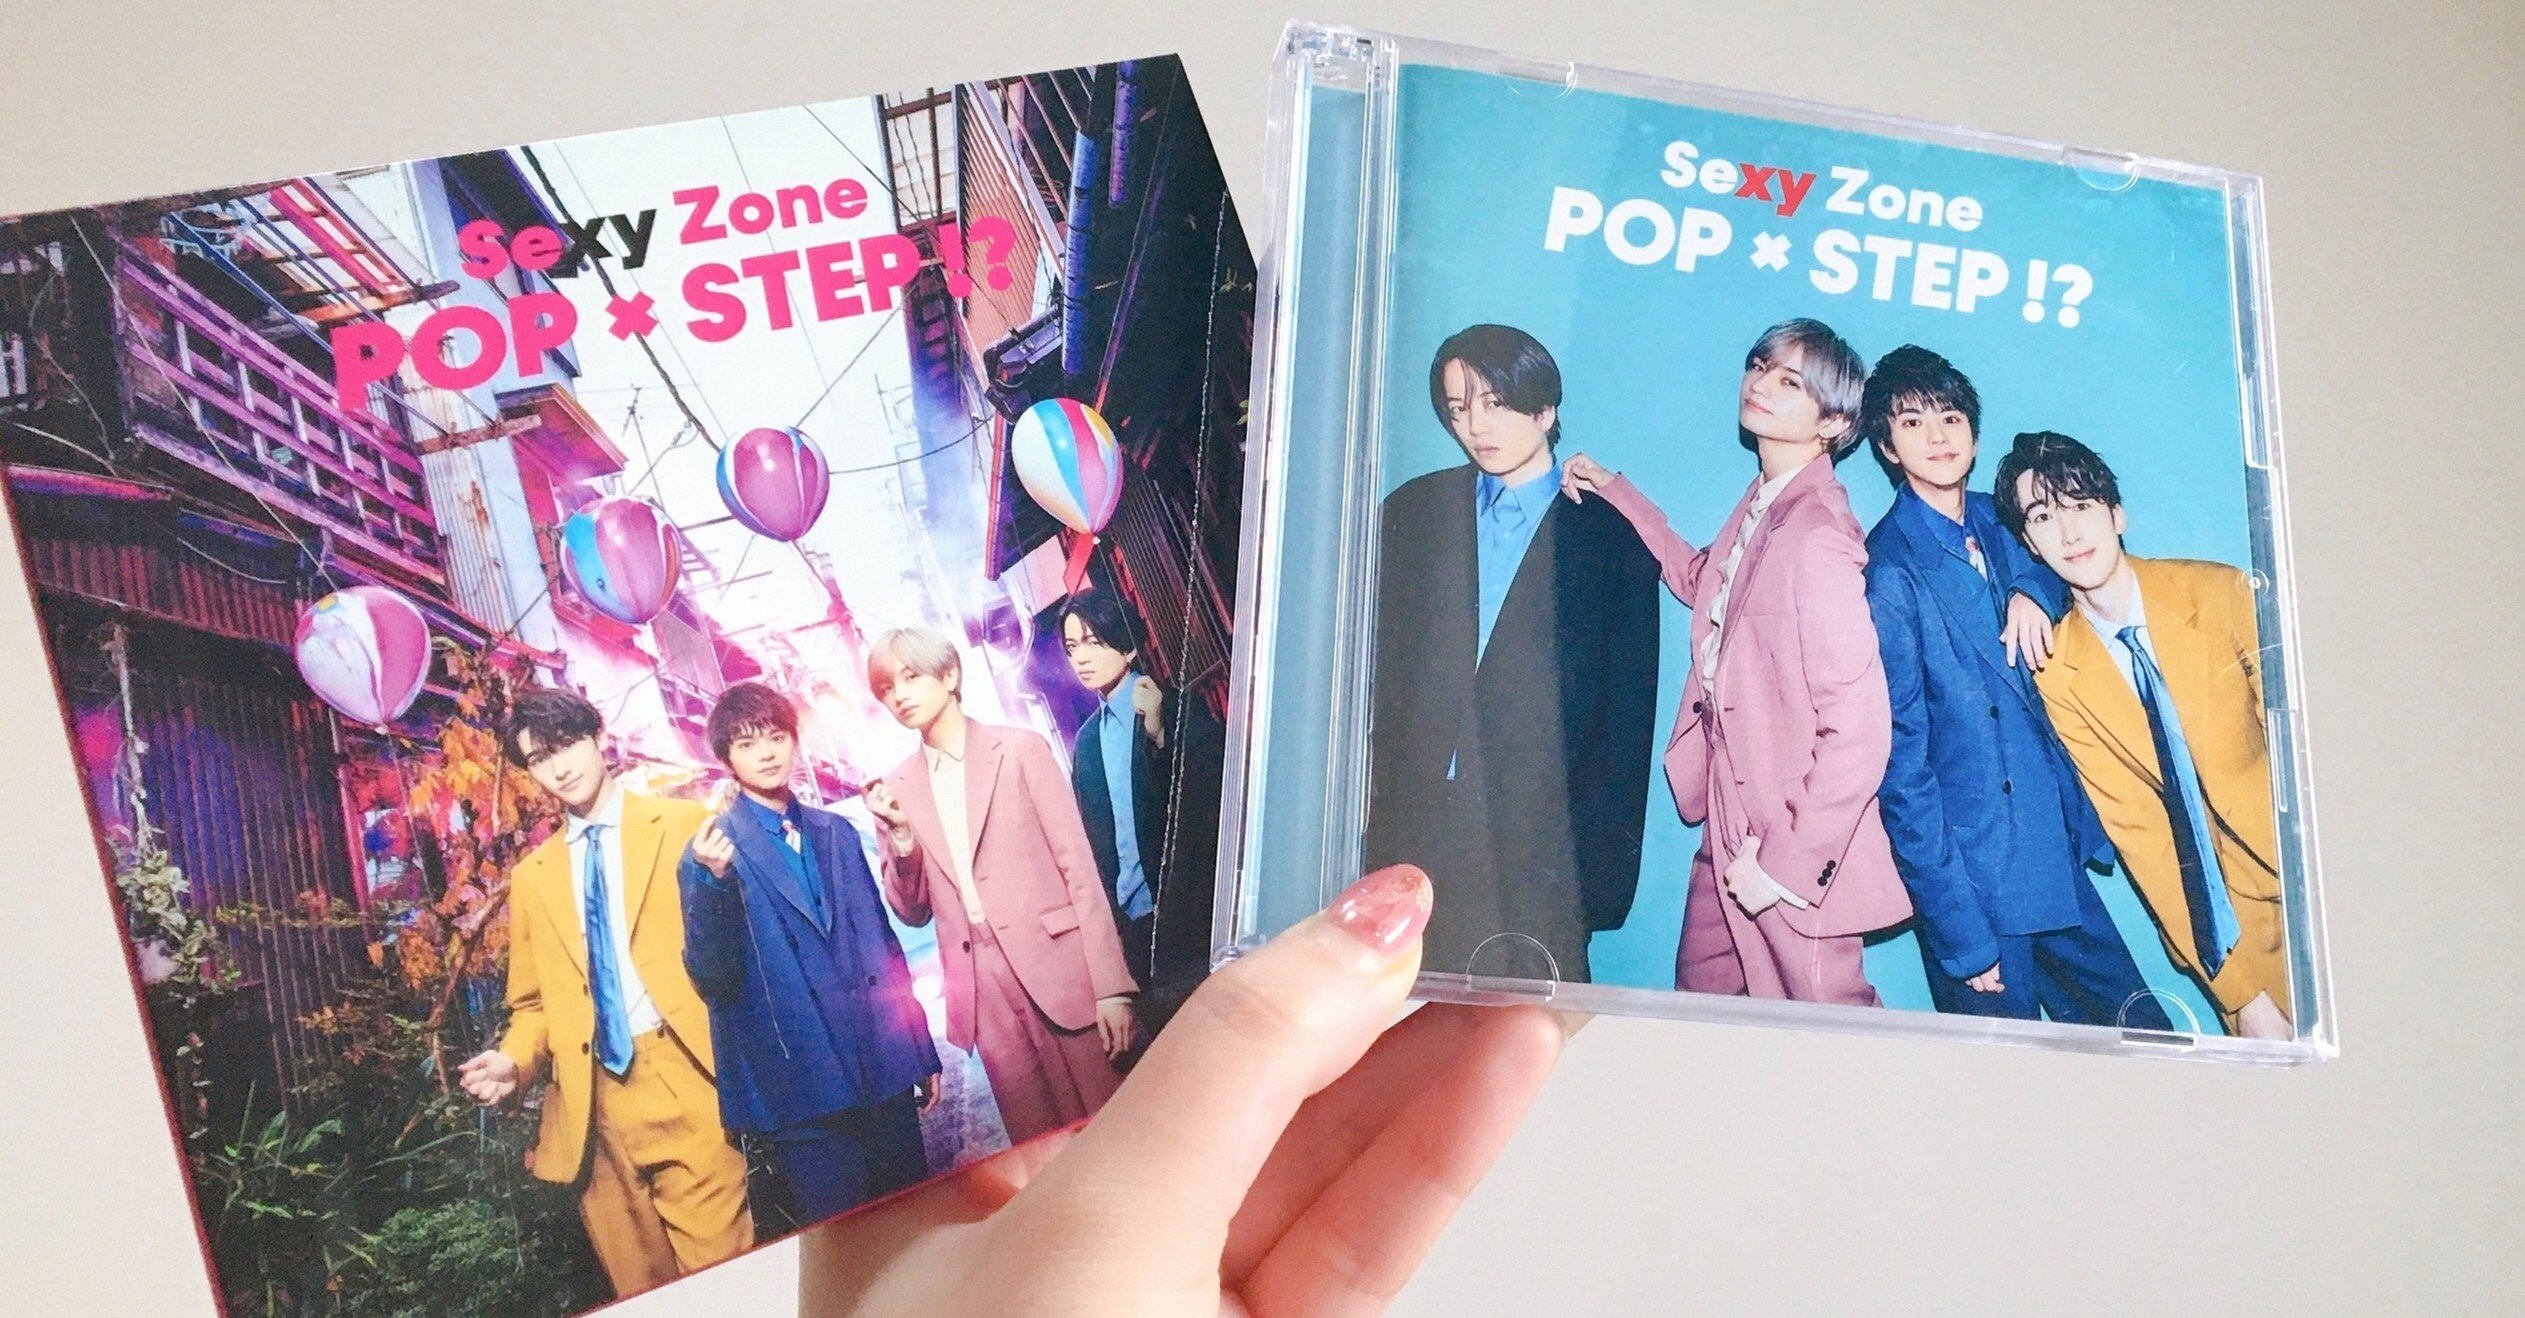 Tokyo Sexy Pop Tune Album Pop Step Sexy Zone 詩織 Note